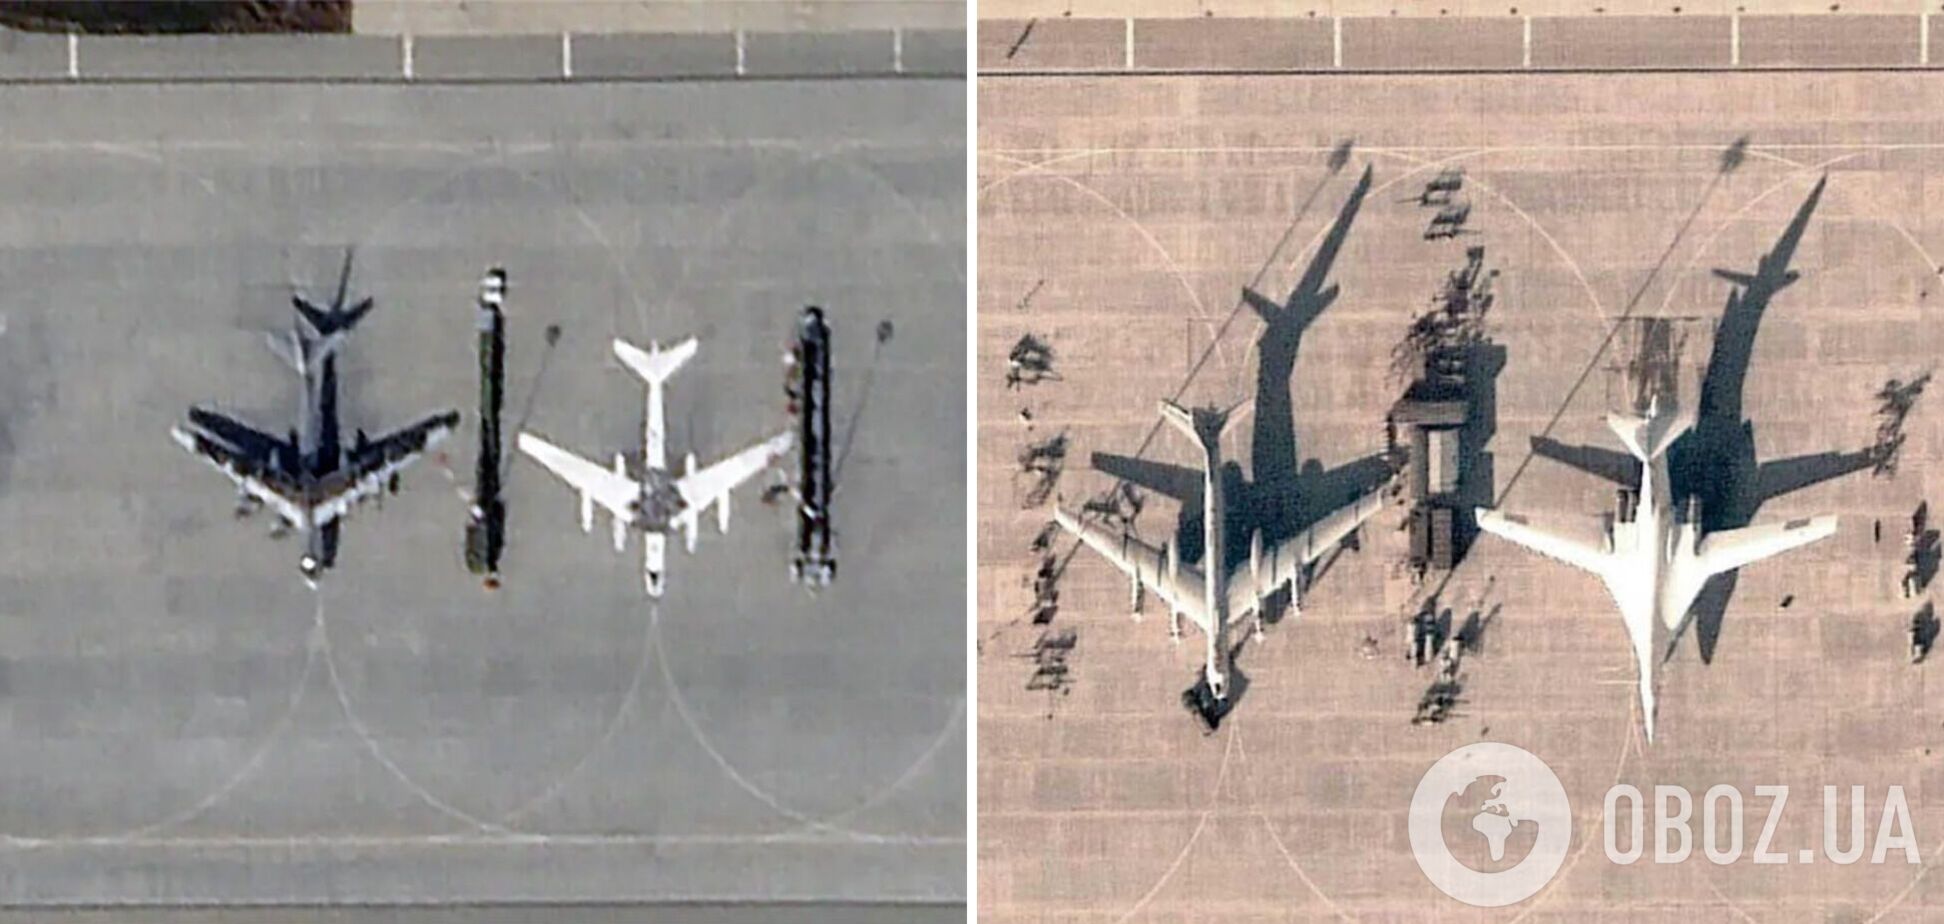 На авиабазе Энгельс появились рисунки бомбардировщиков